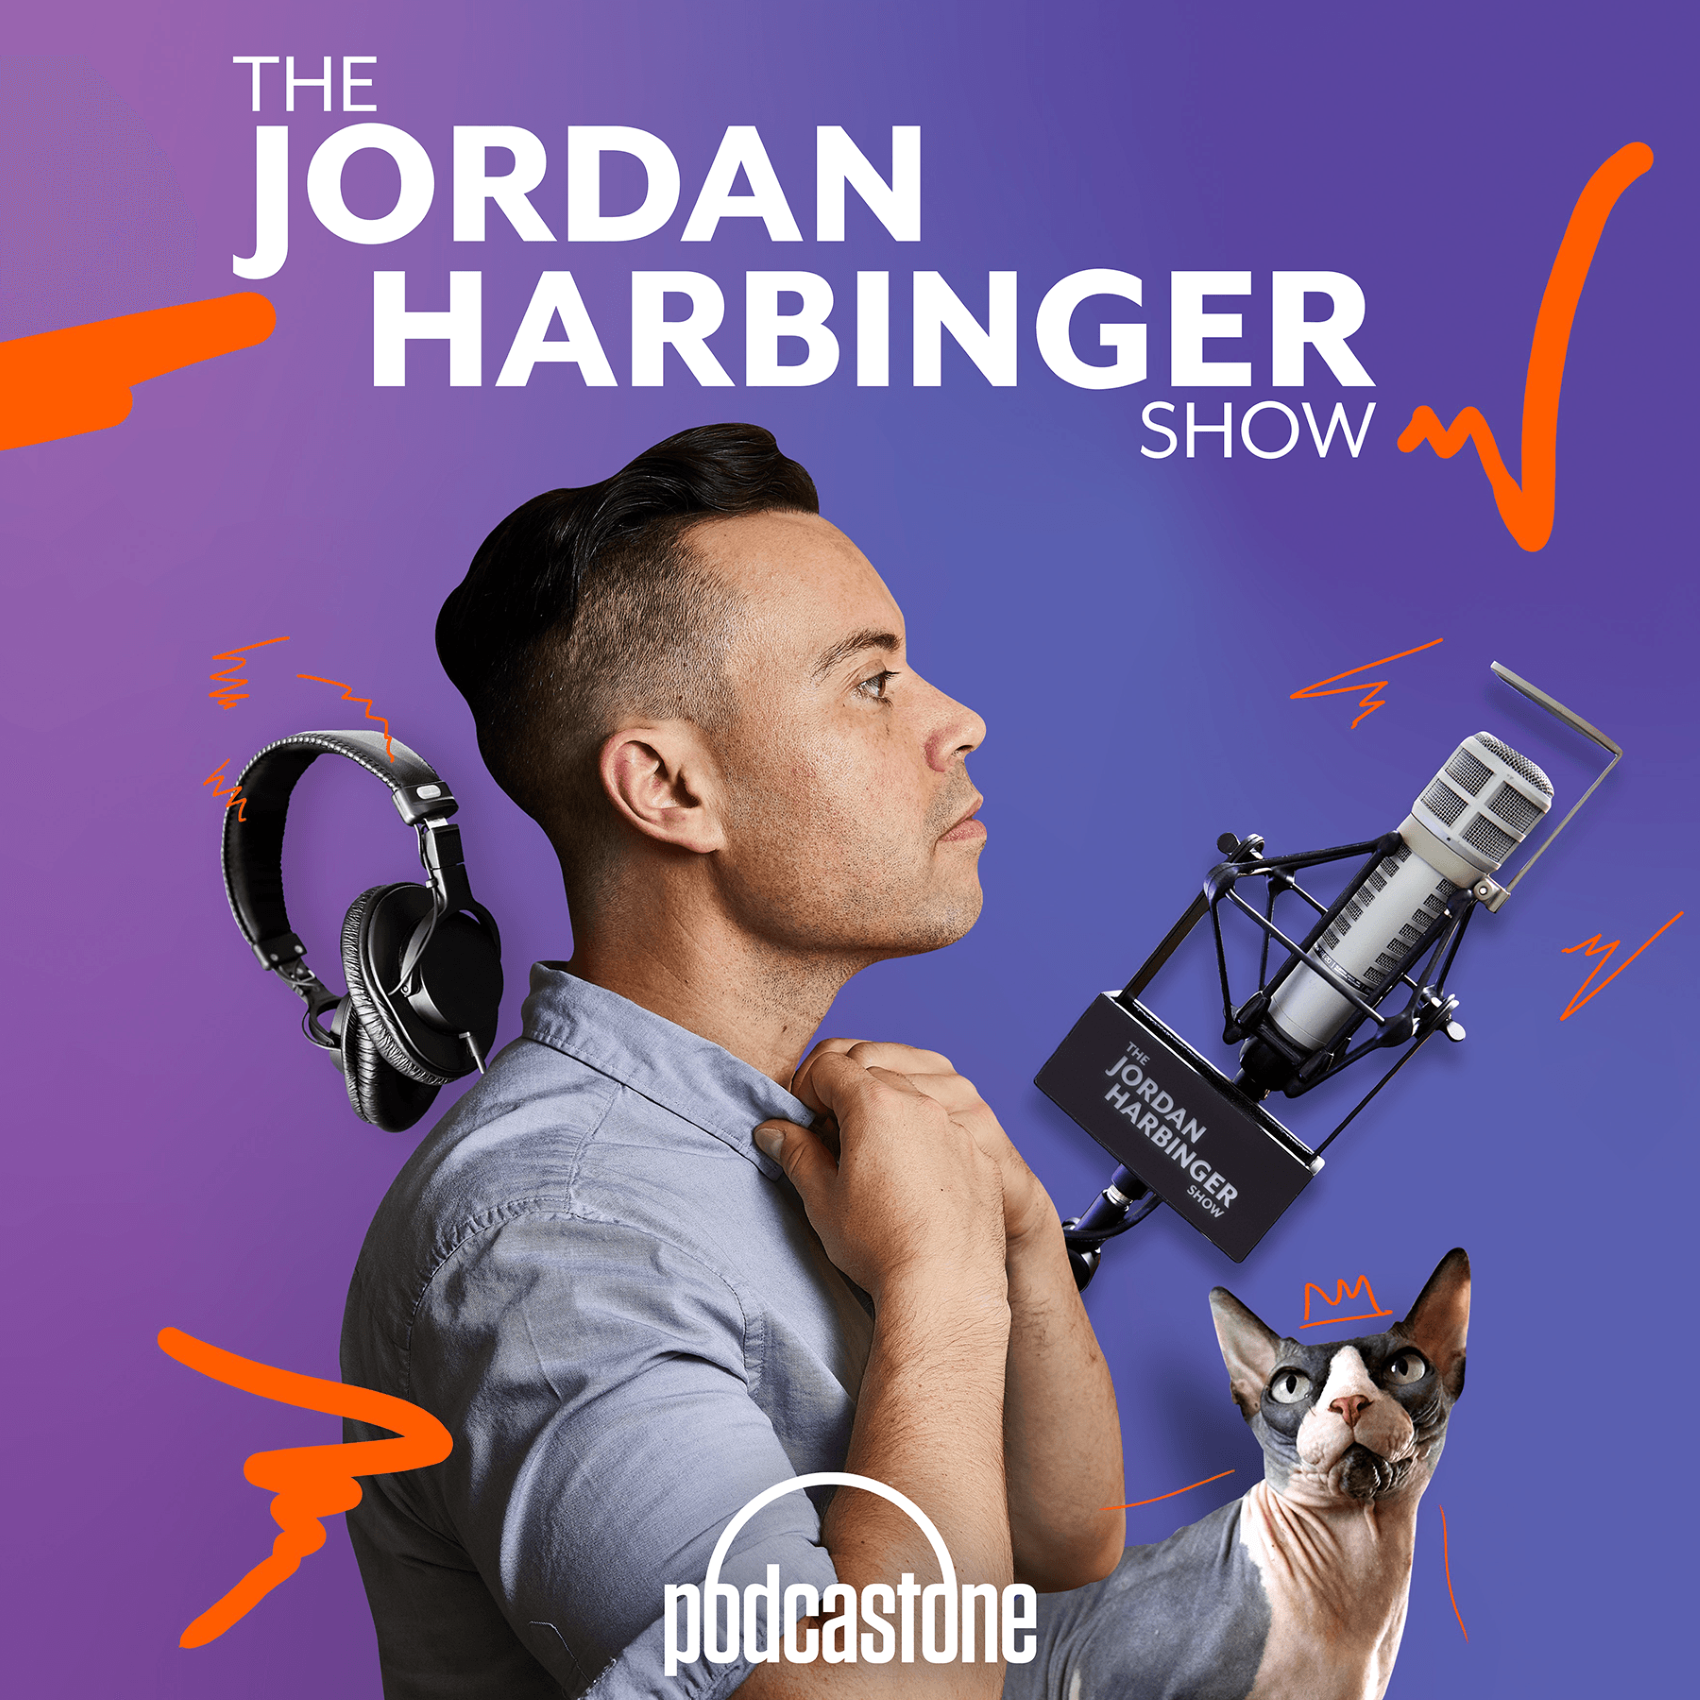 Advertise on “The Jordan Harbinger Show”